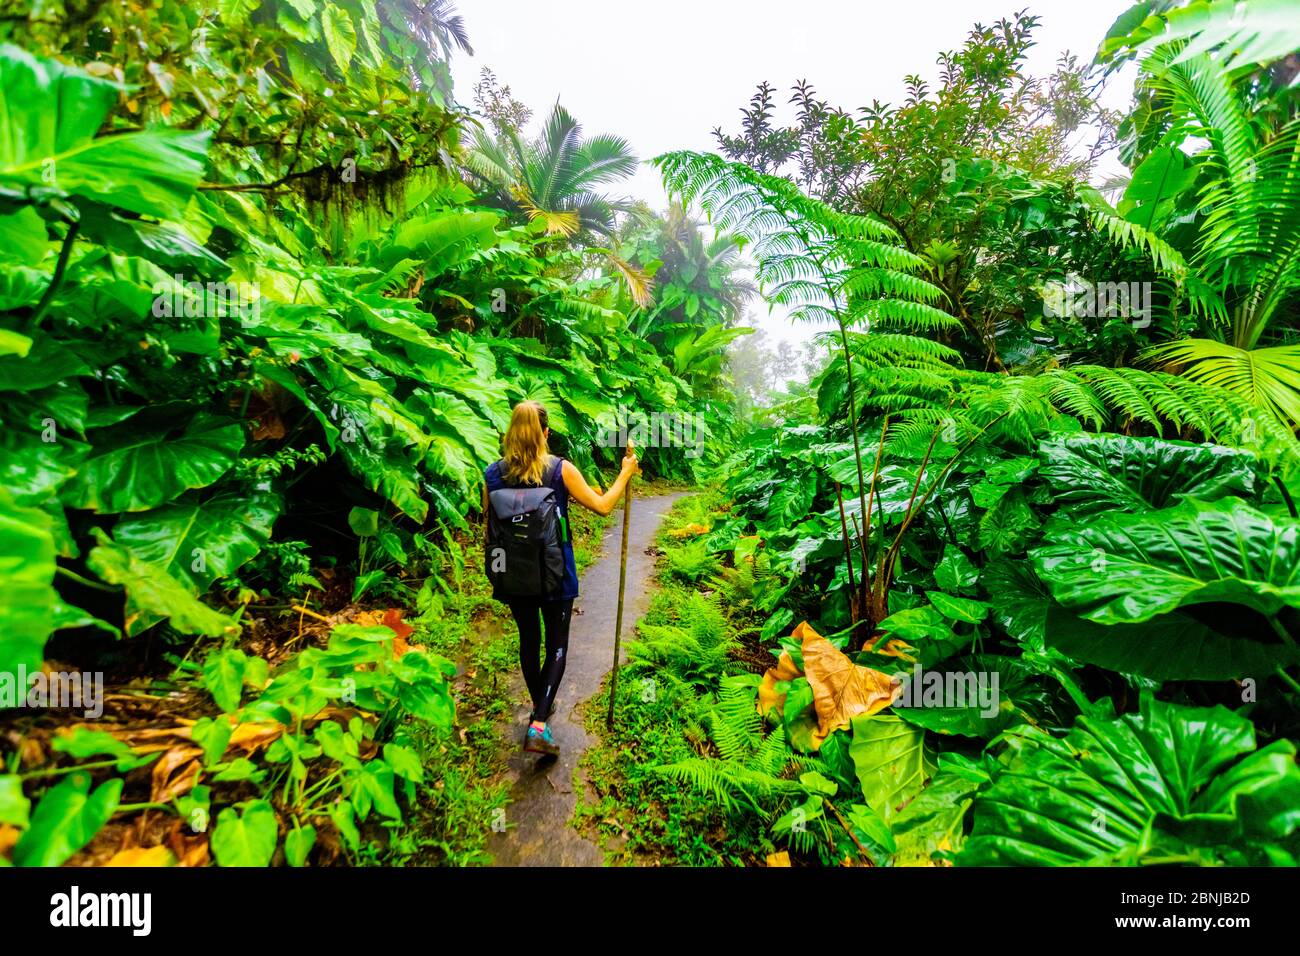 Frau beim Wandern durch die riesigen Elefantenohrpflanzen, Saba Island, Niederländische Antillen, Westindien, Karibik, Mittelamerika Stockfoto